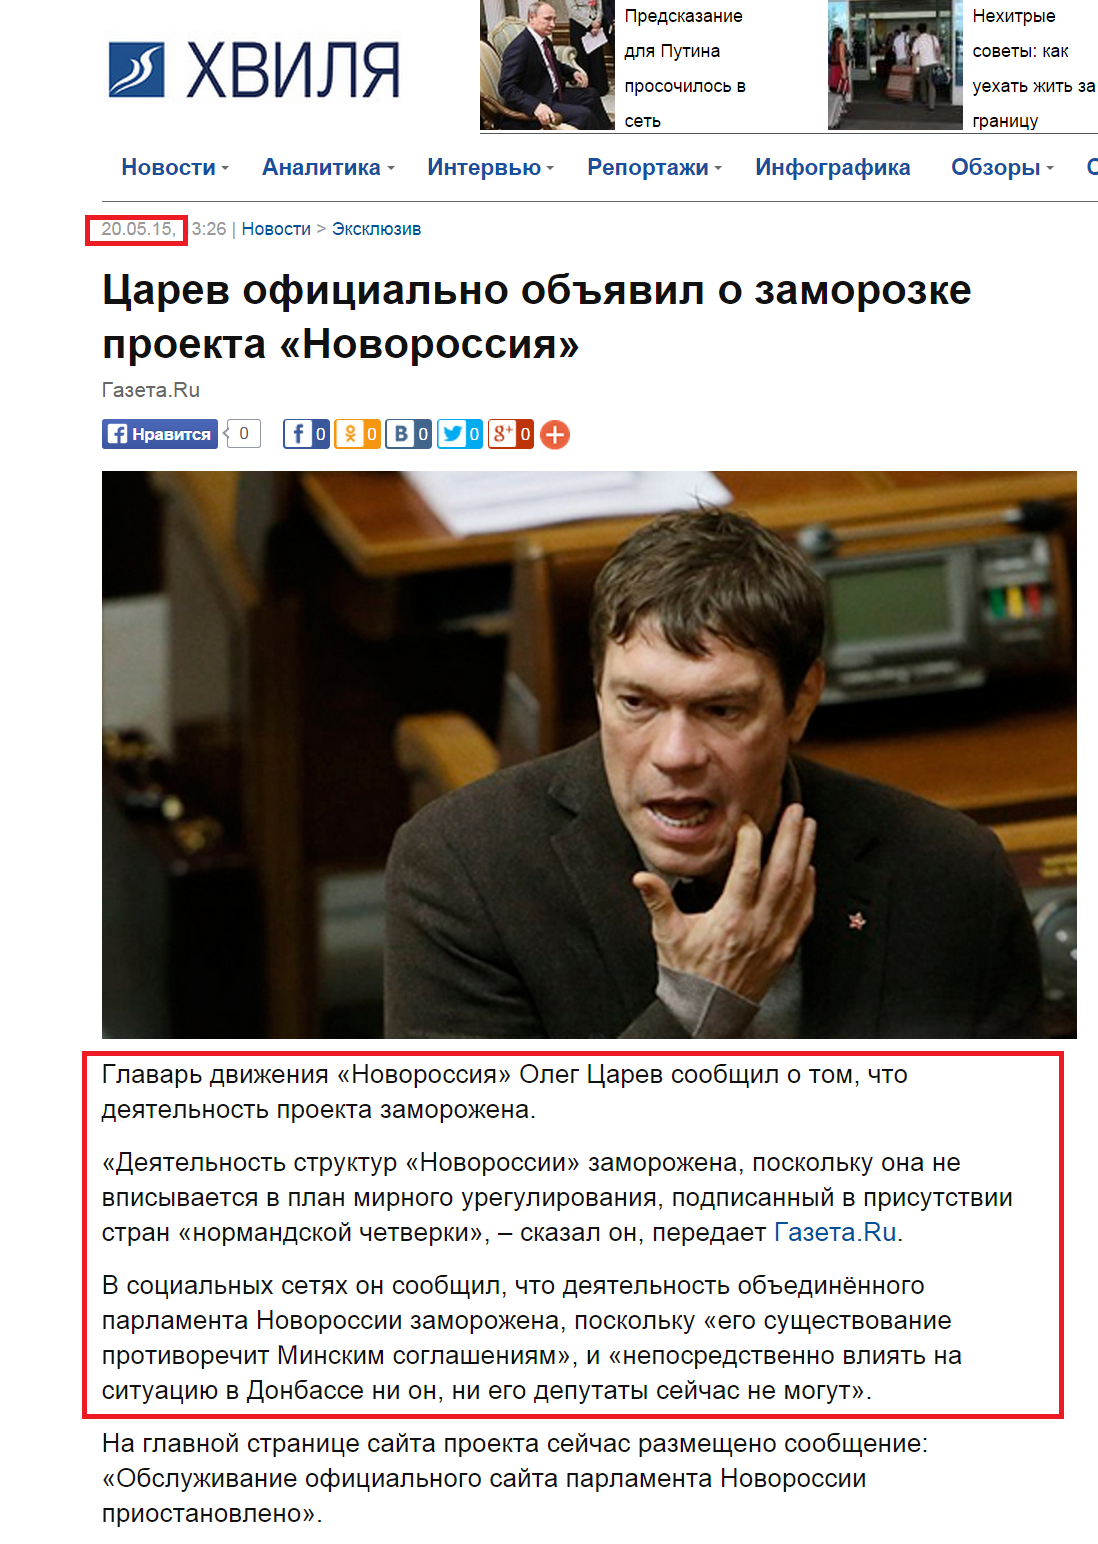 http://hvylya.net/news/exclusive/tsarev-ofitsialno-obyavil-o-zamorozke-proekta-novorossiya.html